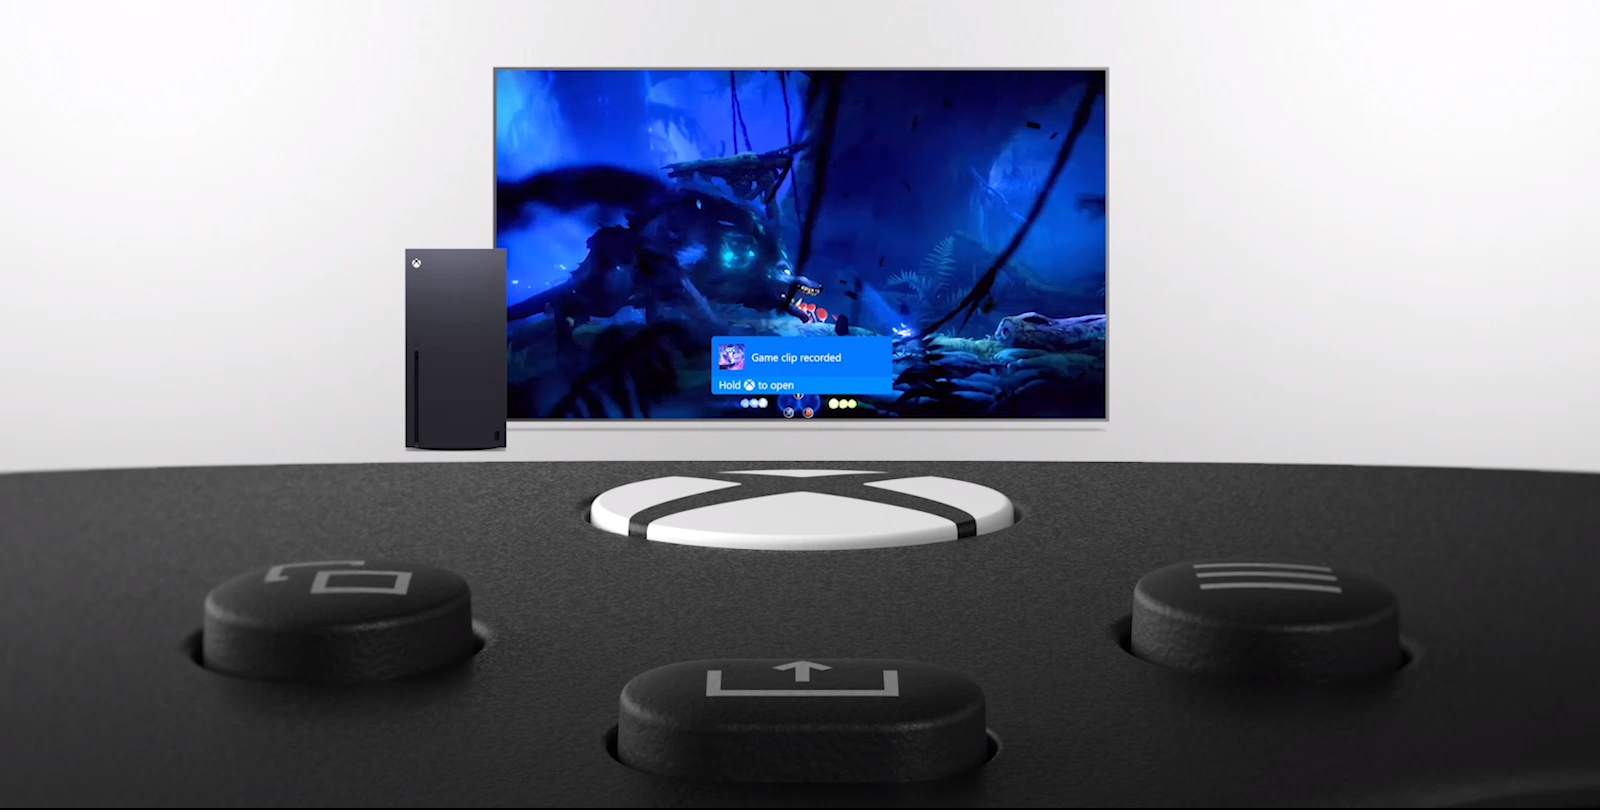 Tay Cầm Chơi Game Xbox Series X Controller - Carbon Black Màu Đen + USB Adapter Không Dây 3